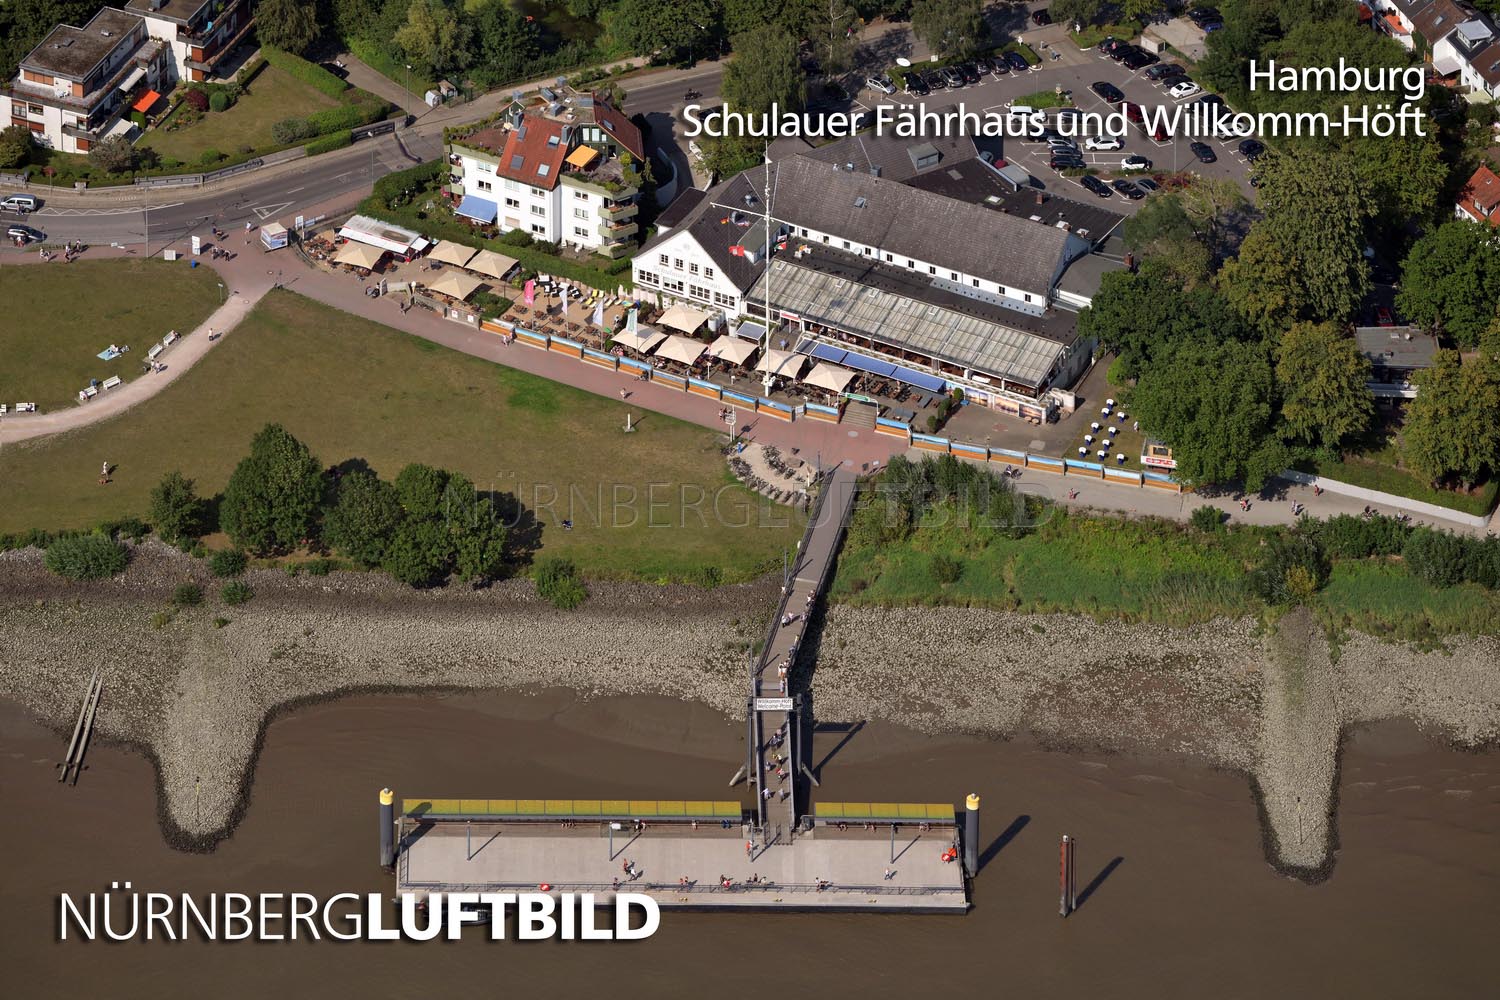 Hamburg, Schulauer Fährhaus und Willkomm-Höft